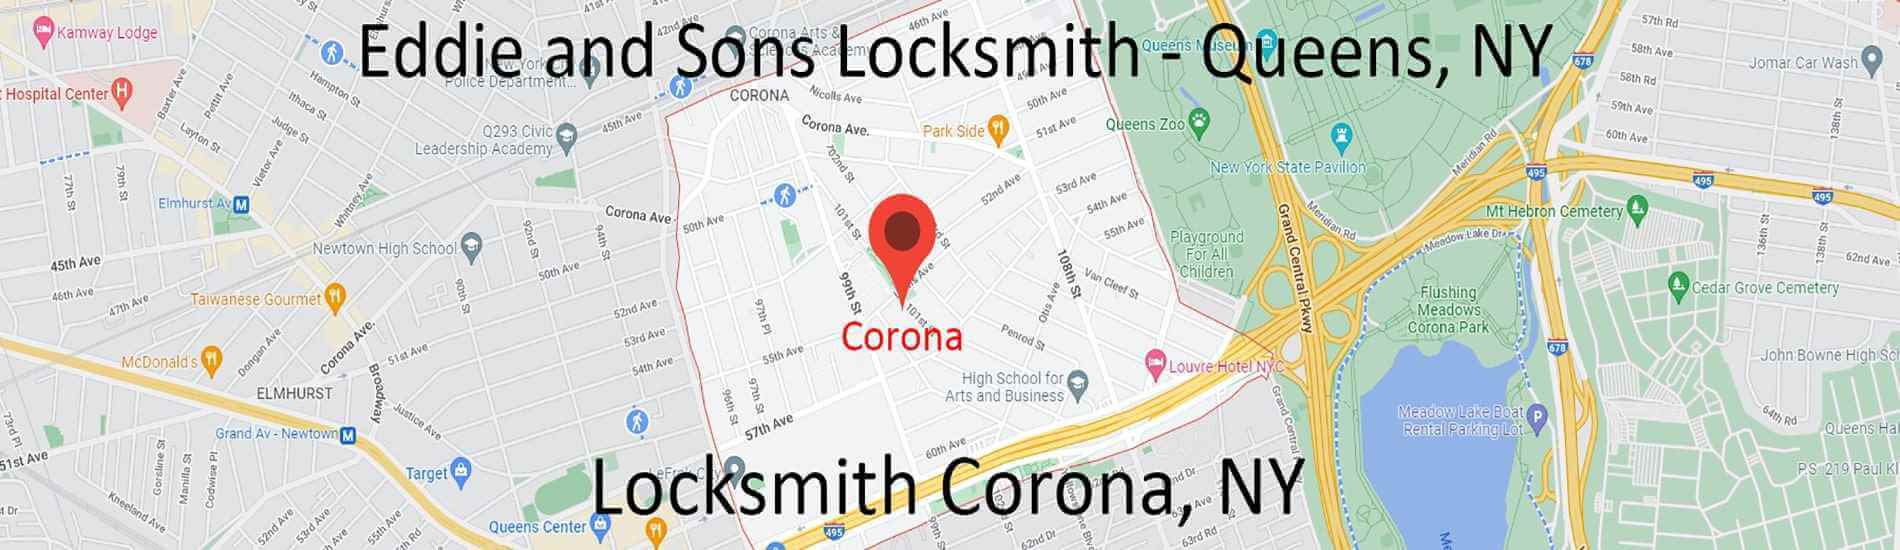 corona-locksmith